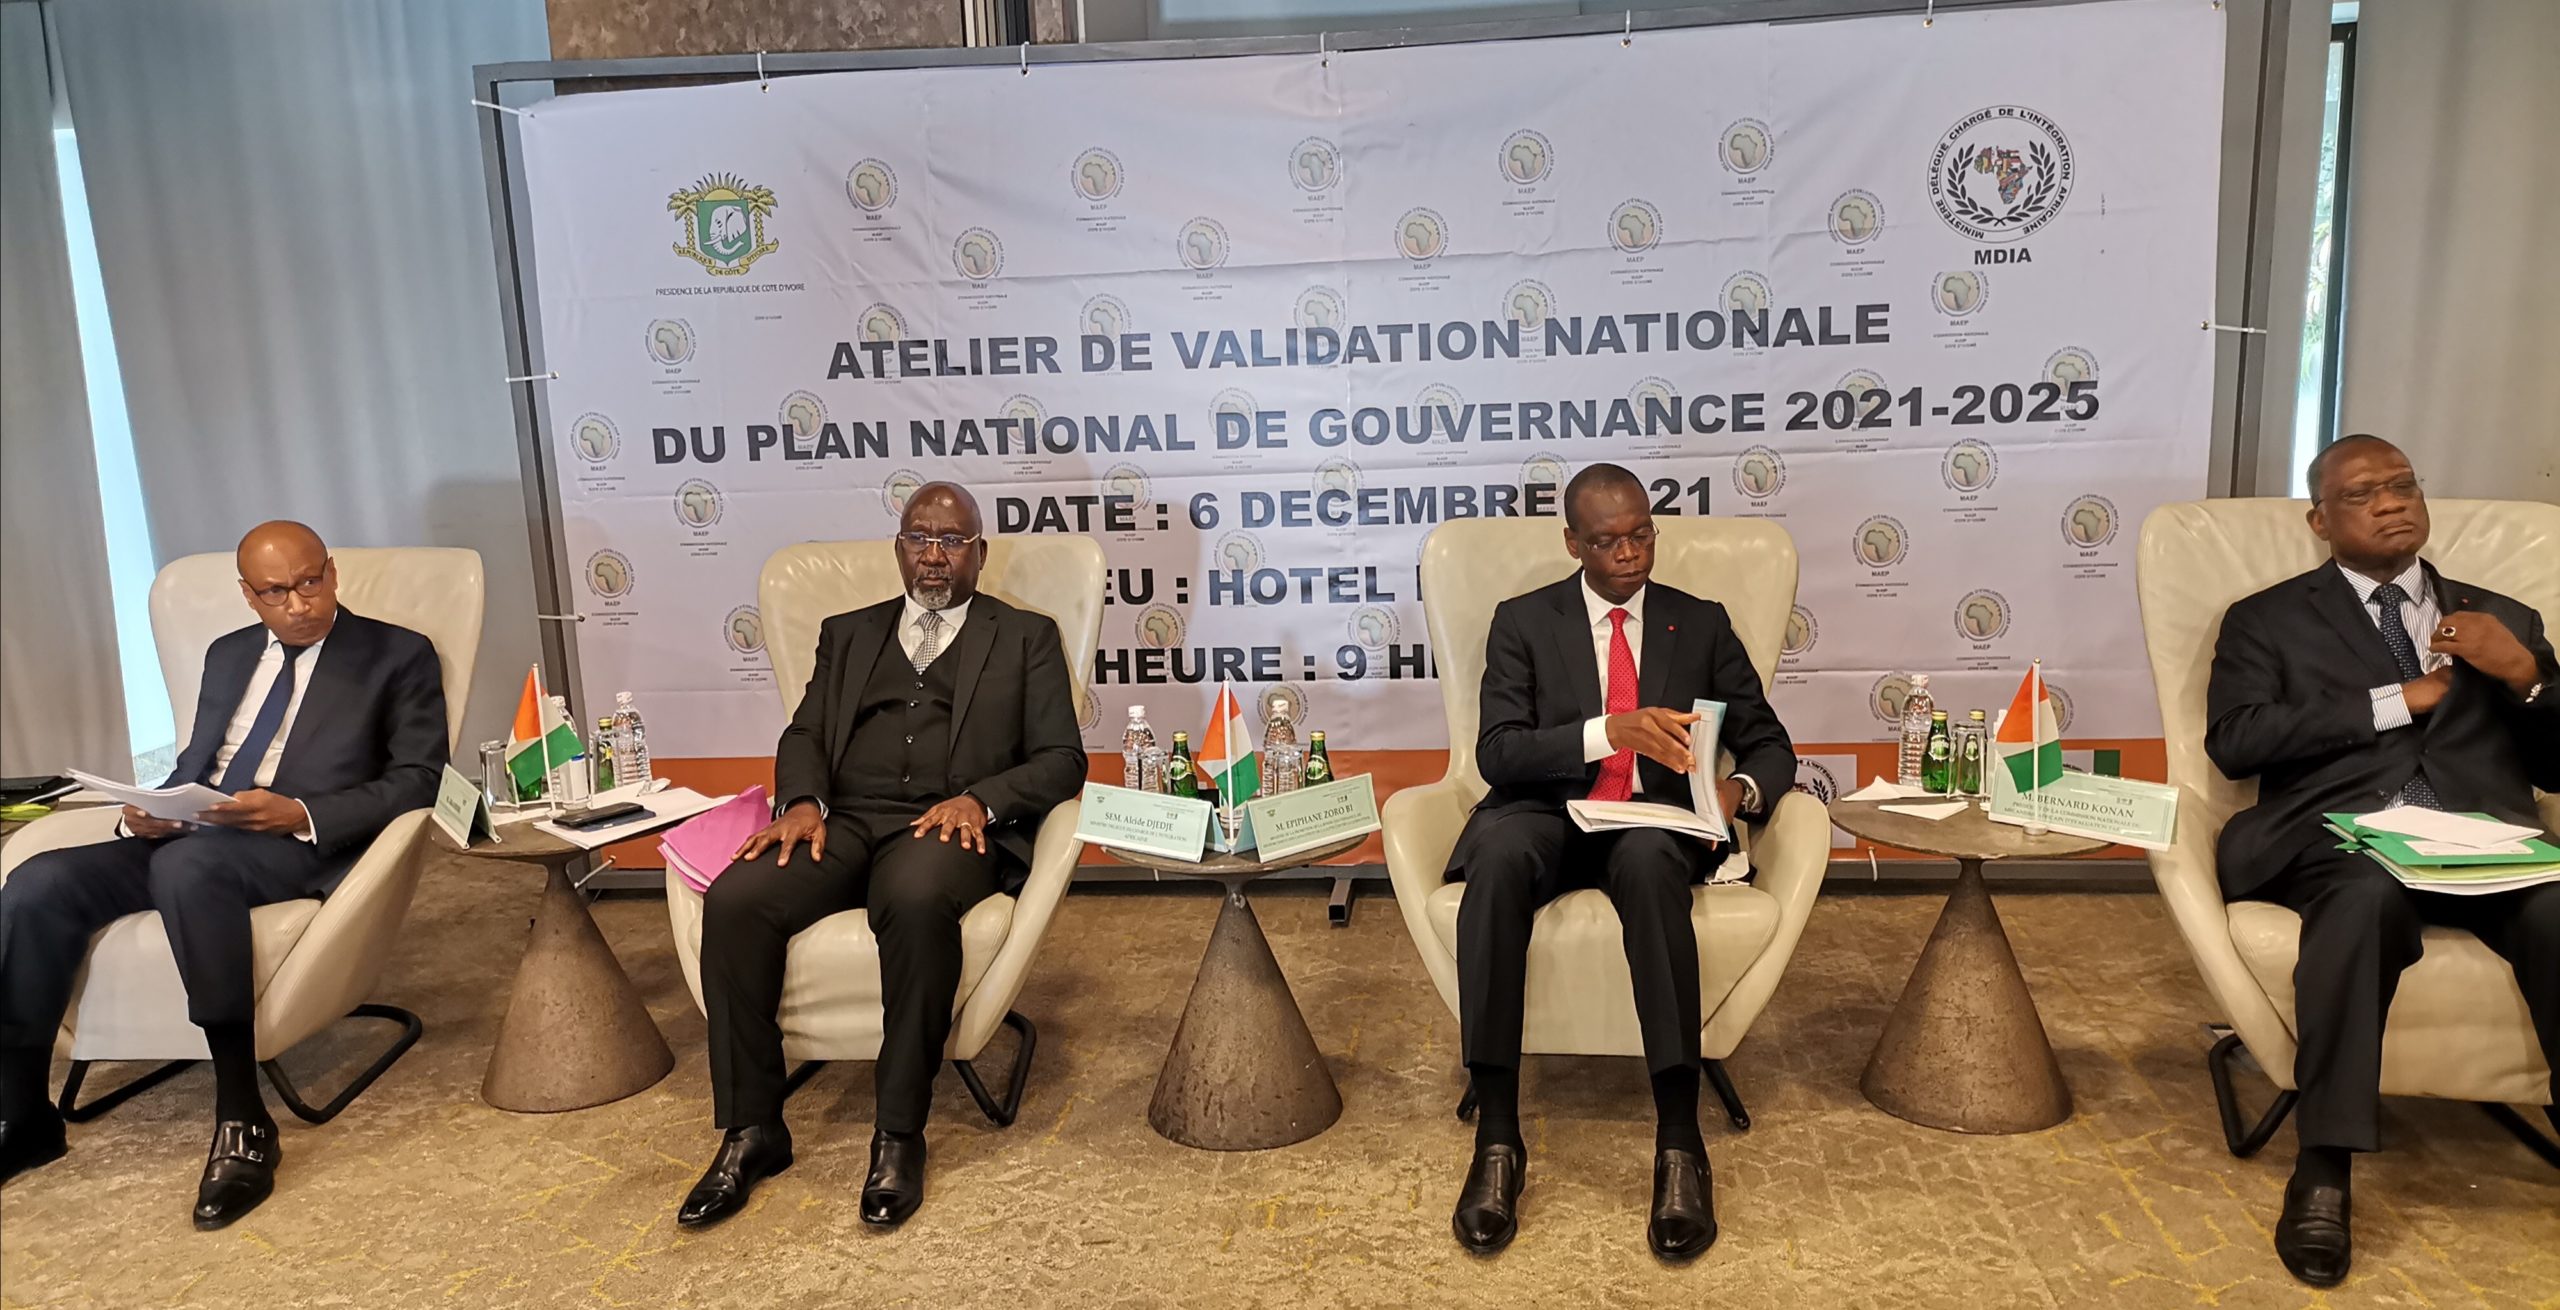 ATELIER DE VALIDATION NATIONALE DU PLAN NATIONAL DE GOUVERNANCE 2021-2025 CÔTE D’IVOIRE